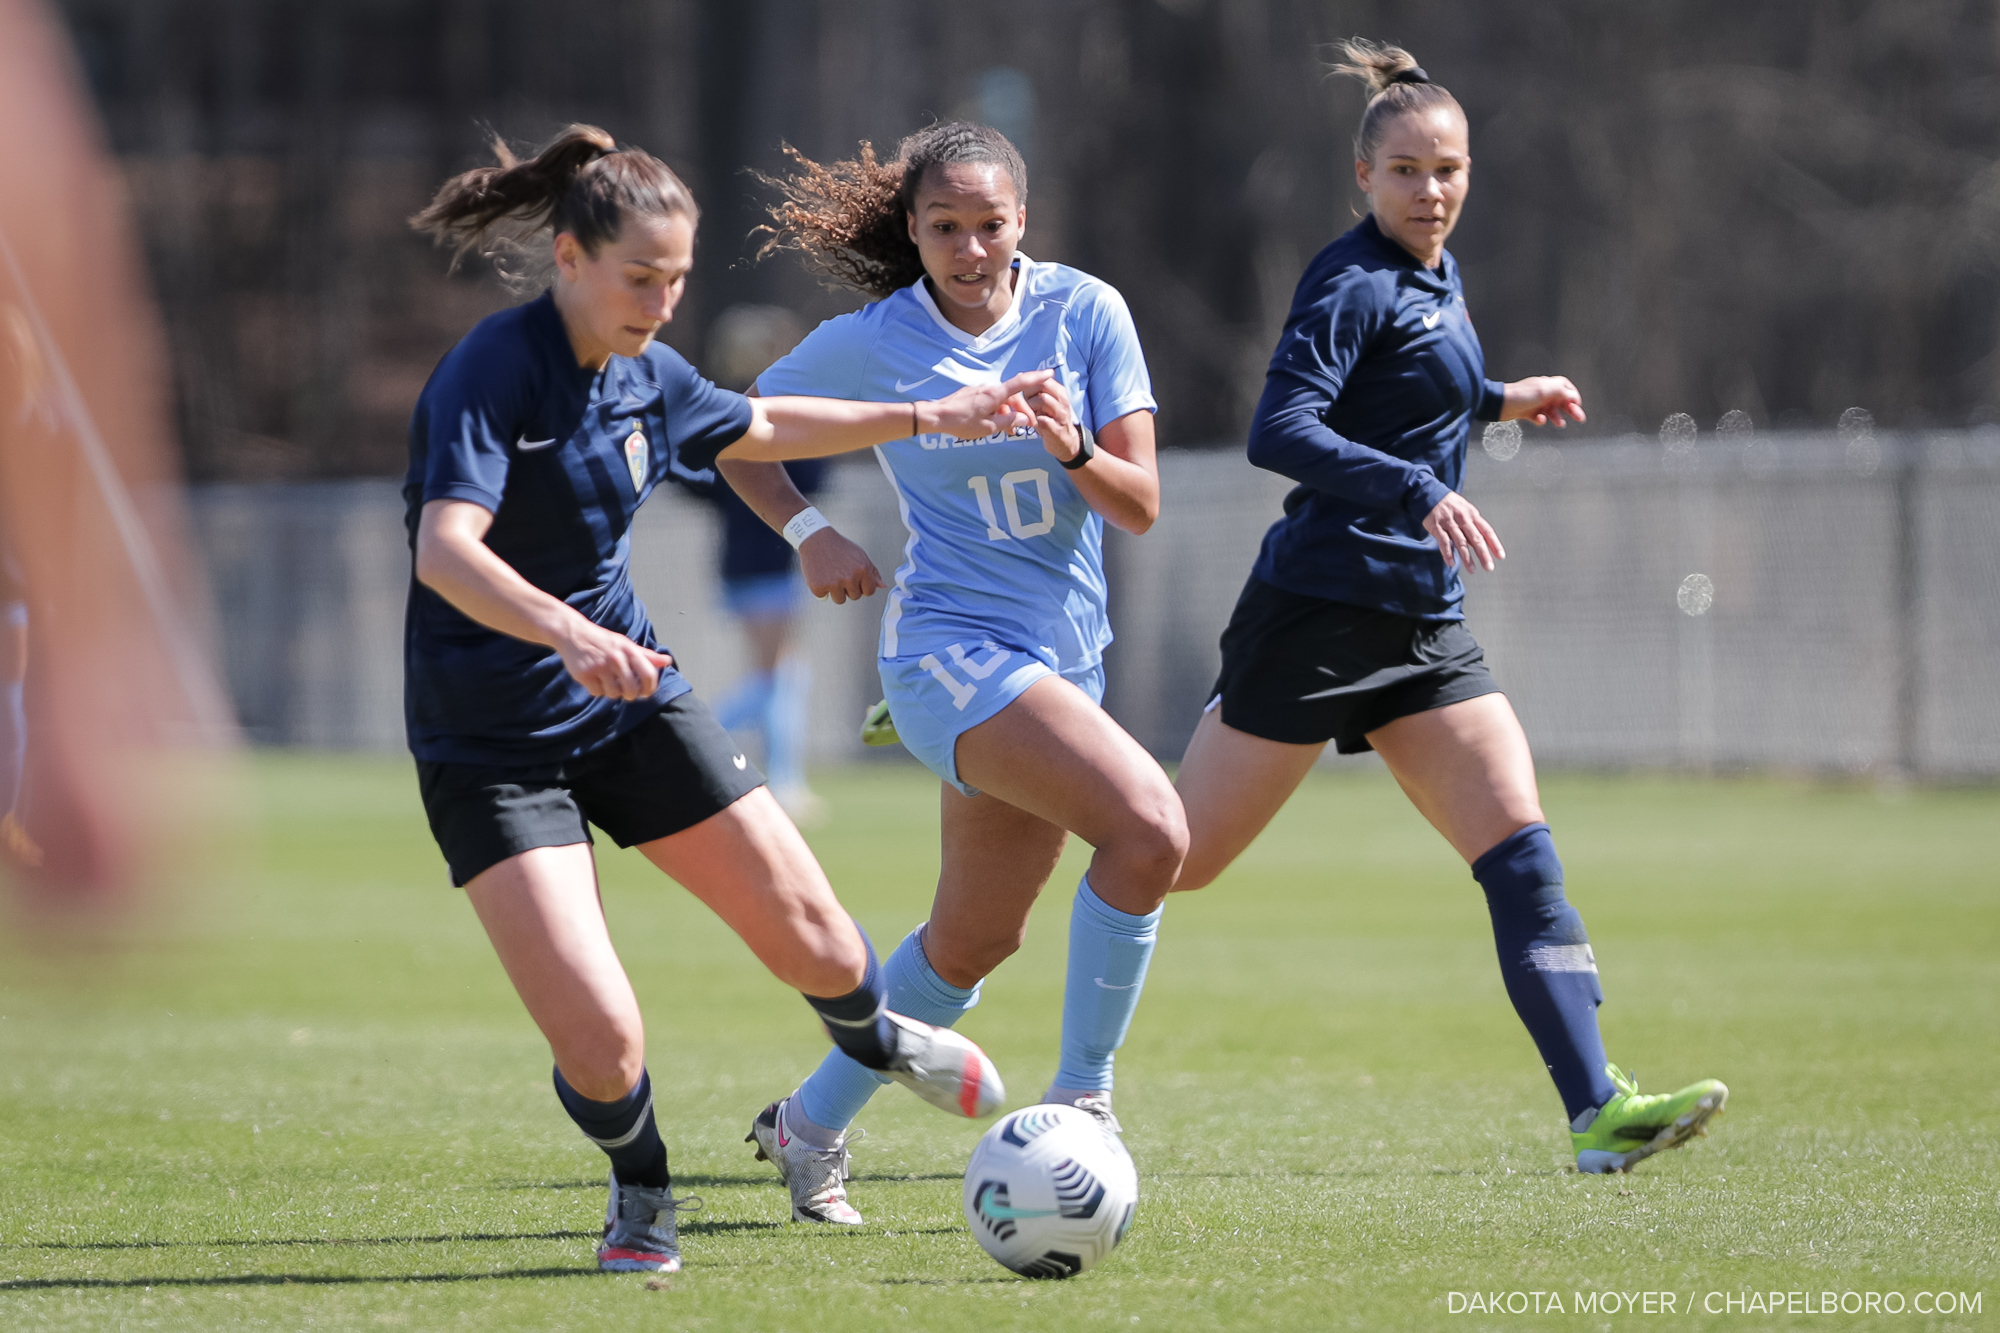 Rachel Jones Of UNC Women’s Soccer Named Academic All-District